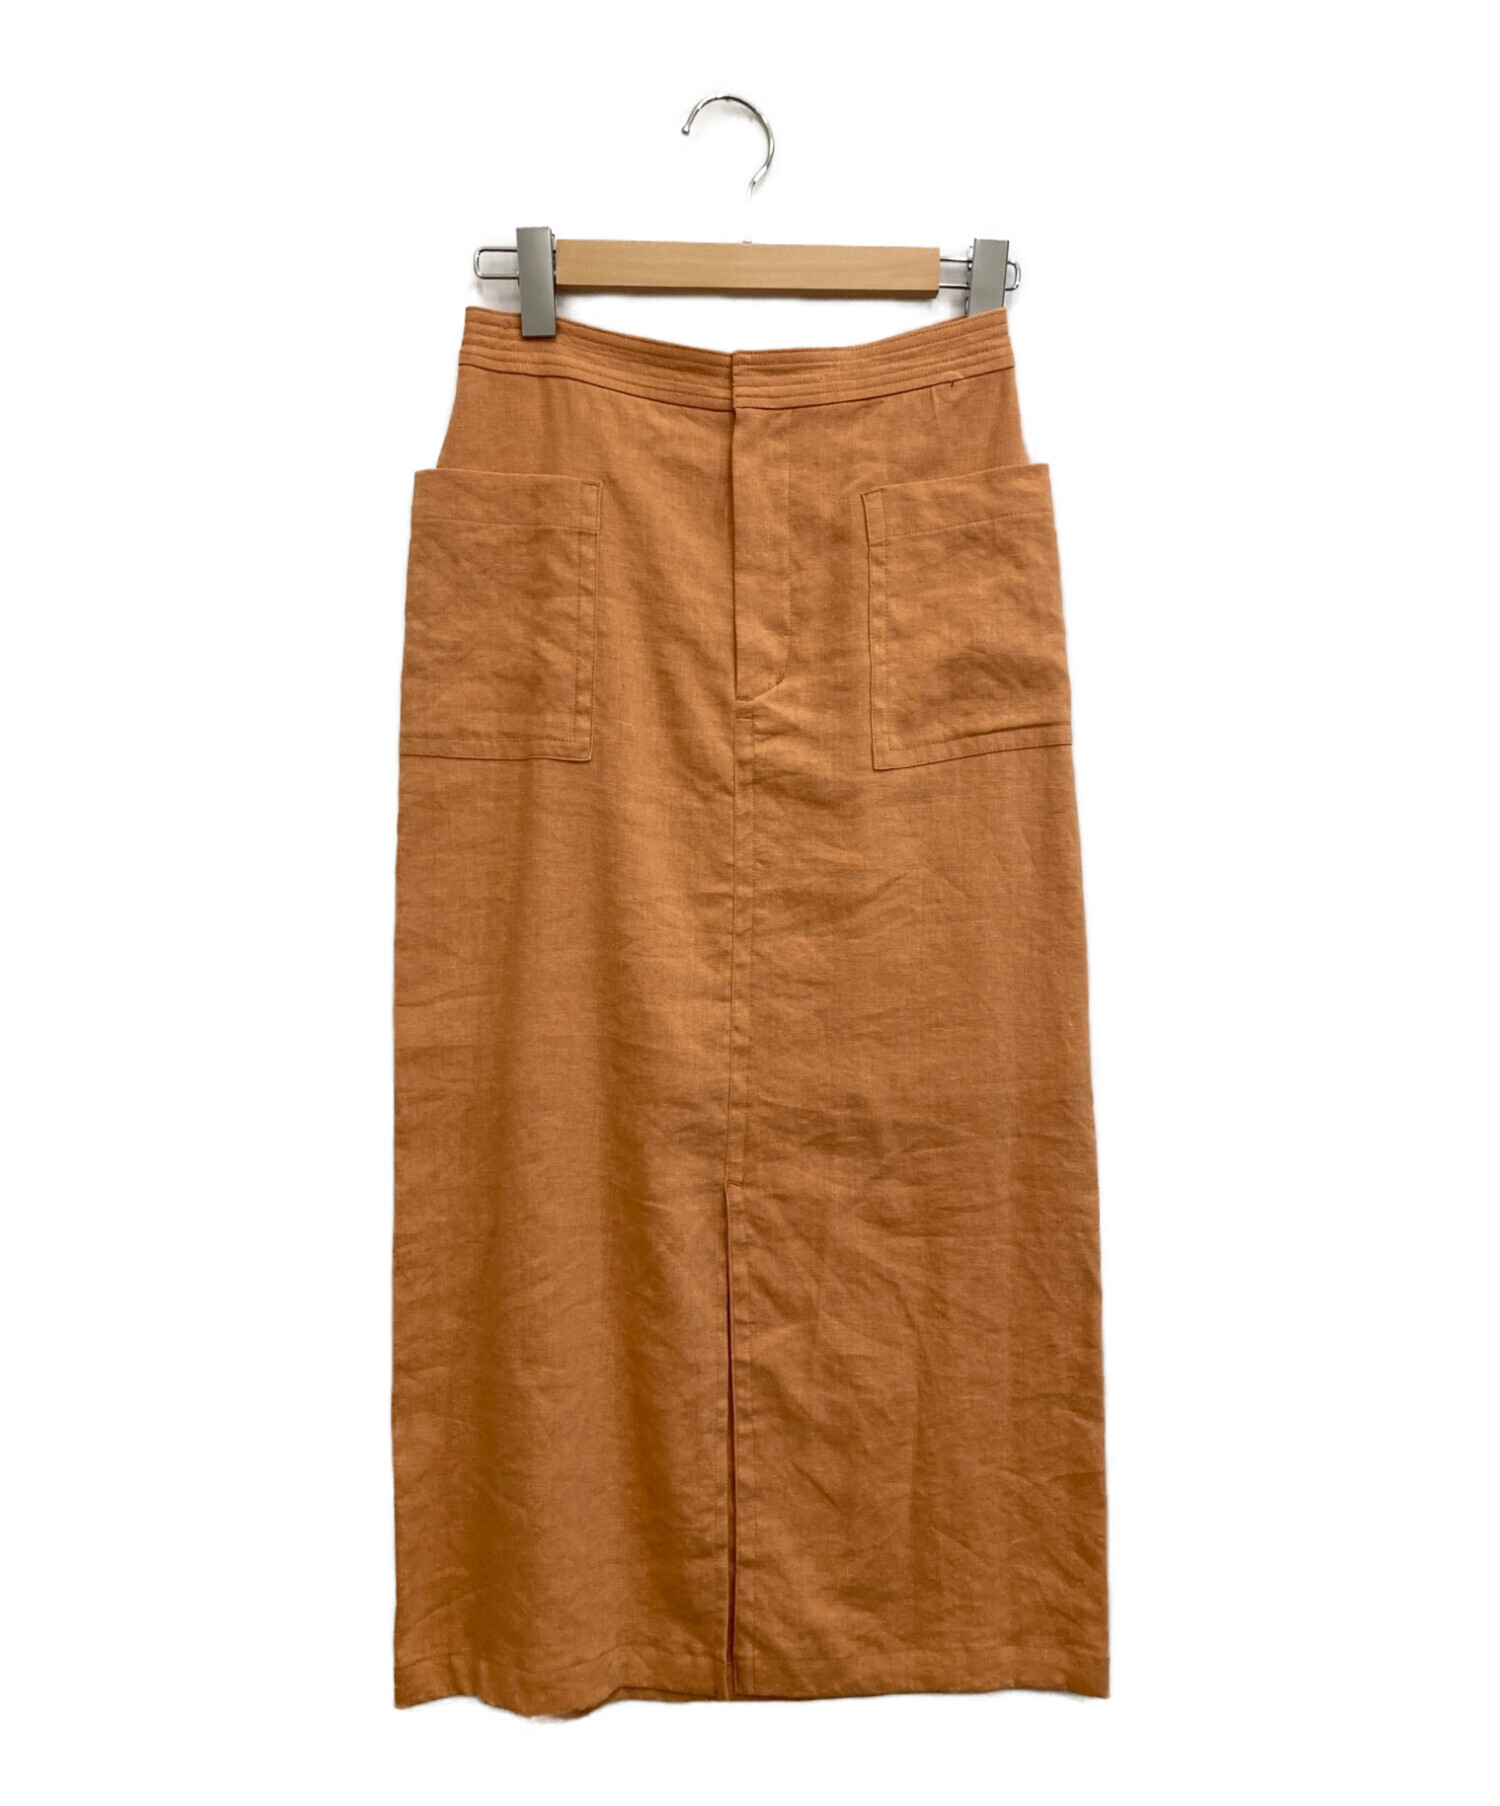 SLOBE IENA (スローブ イエナ) リネンタイトスカート オレンジ サイズ:36